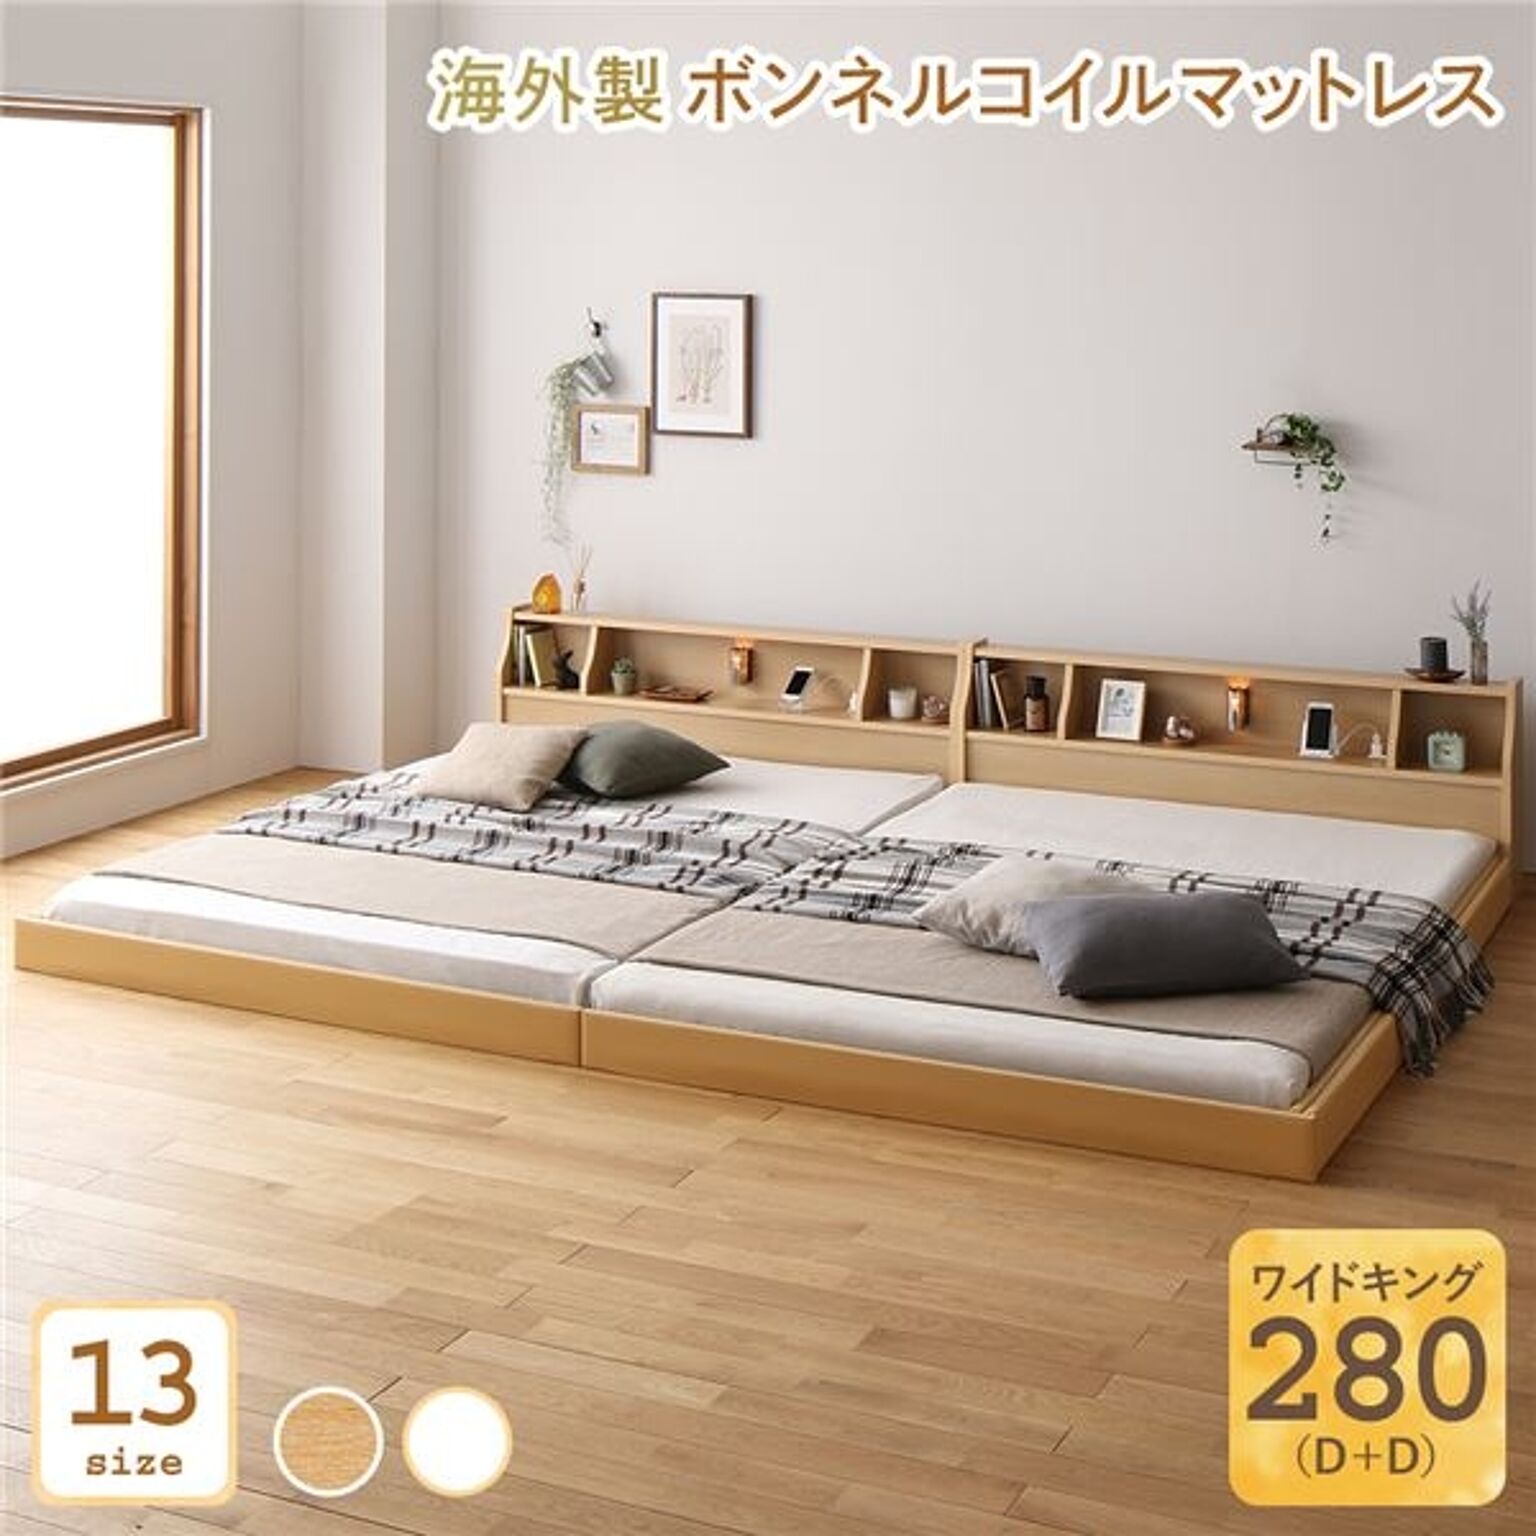 日本製 ワイドキング280 ベッド 低床 連結 ロータイプ 照明付き・棚